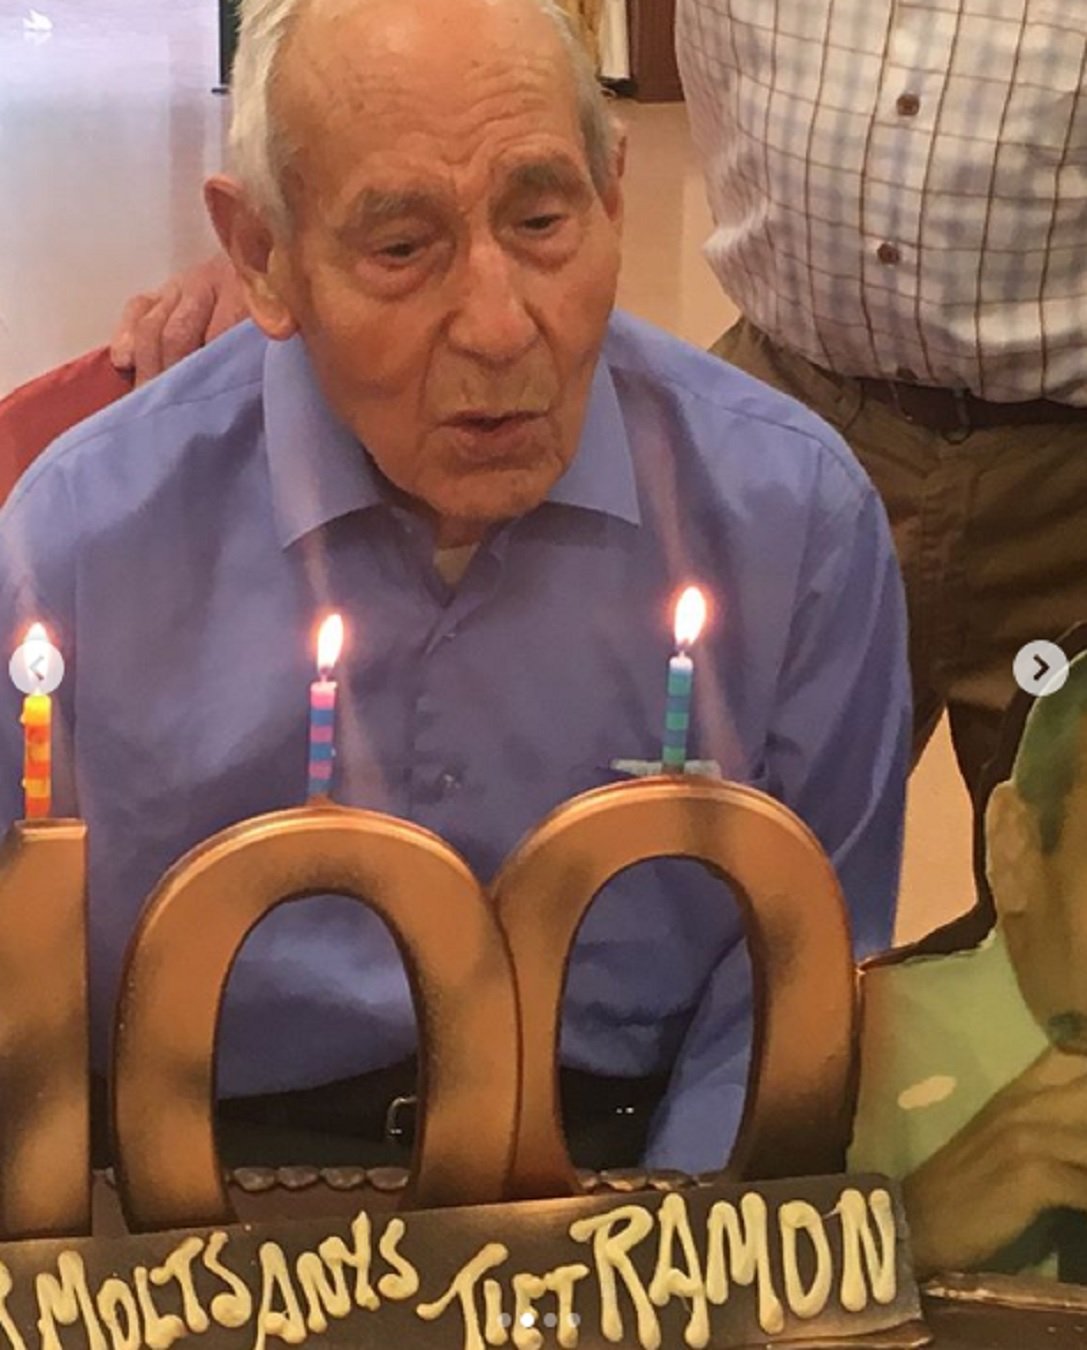 Famoso presentador de TV3 tiene al abuelo de 103 años en casa y habla del virus